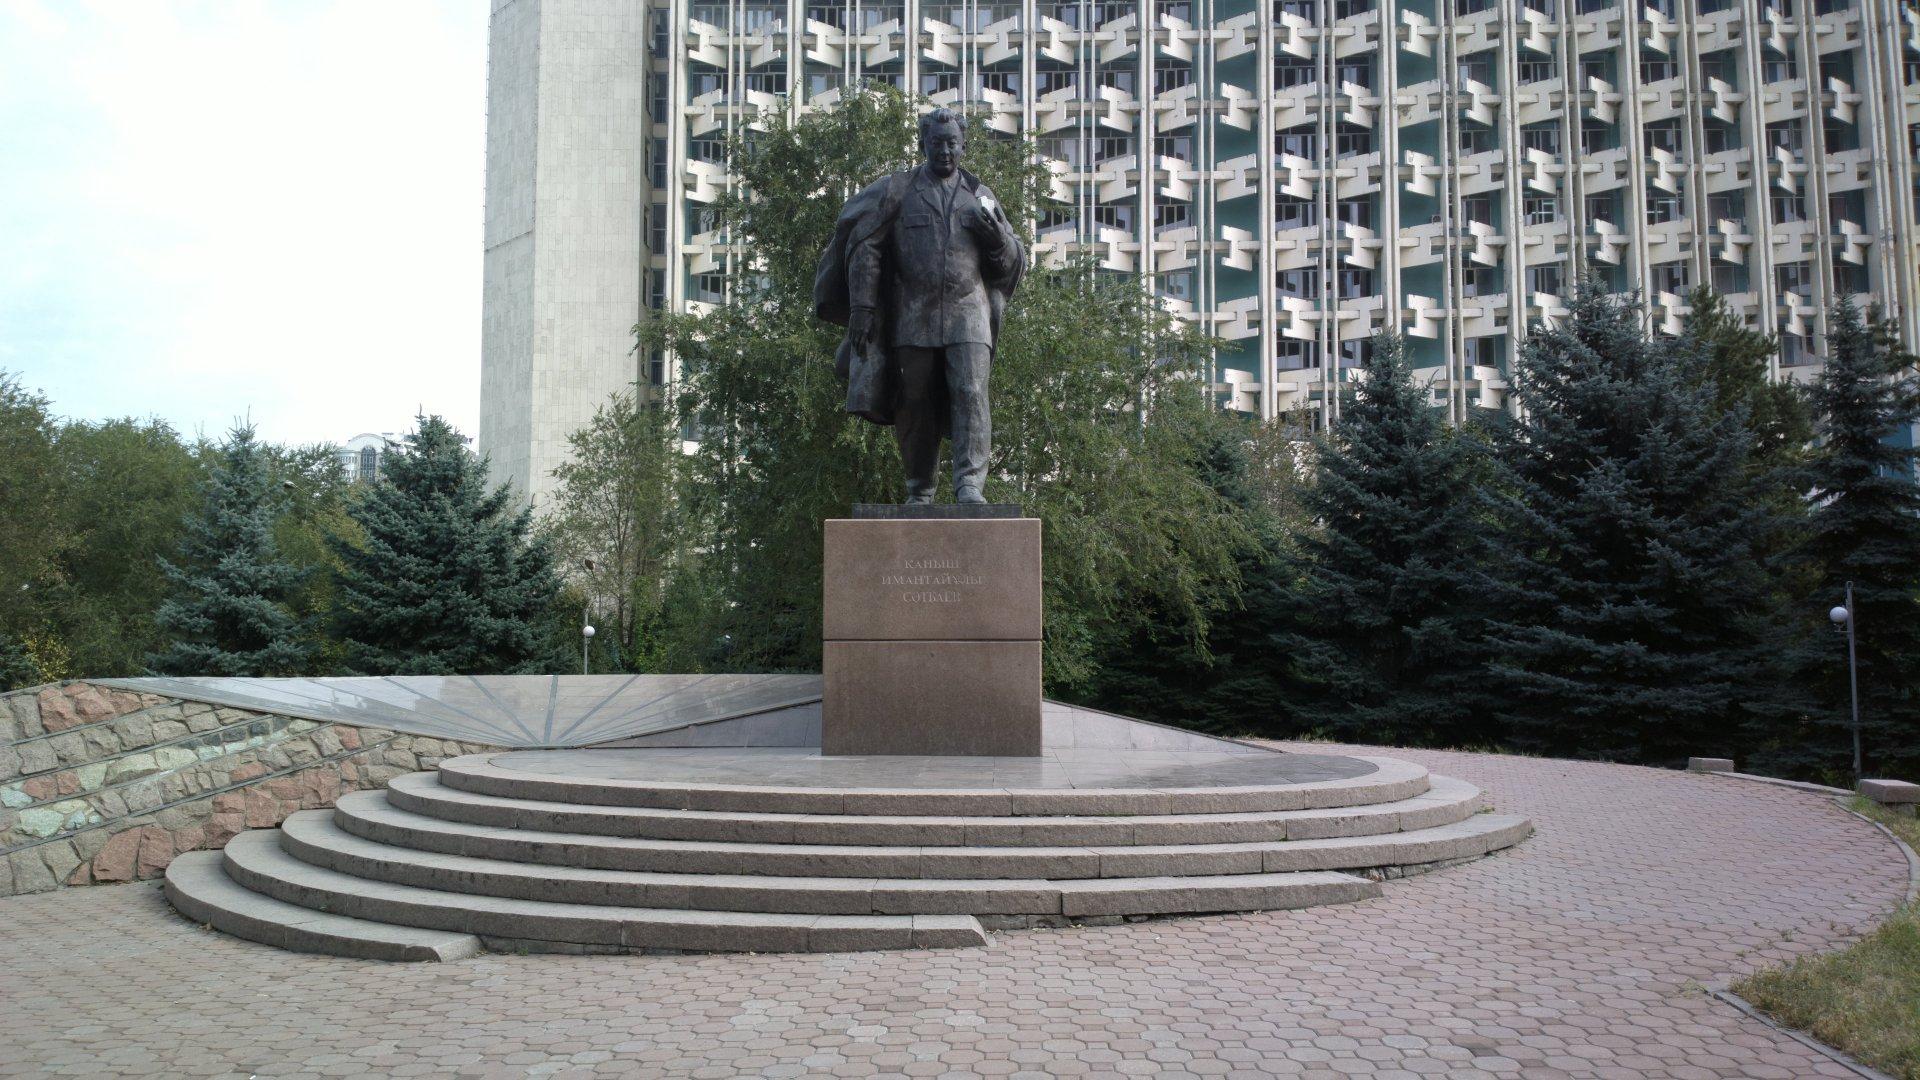 The K.I. Satpayev Memorial